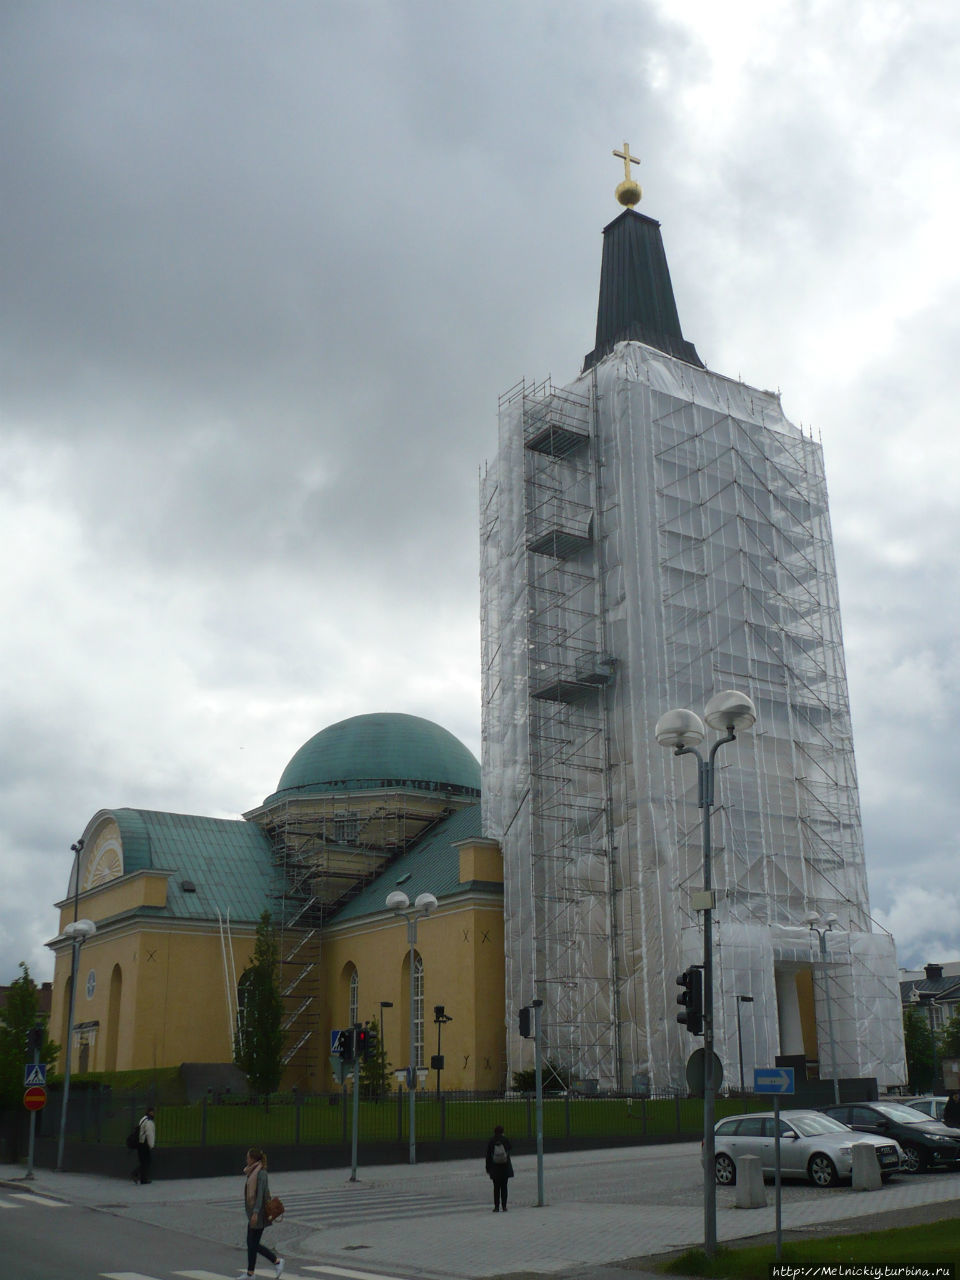 Кафедральный собор имени Густава III Оулу, Финляндия